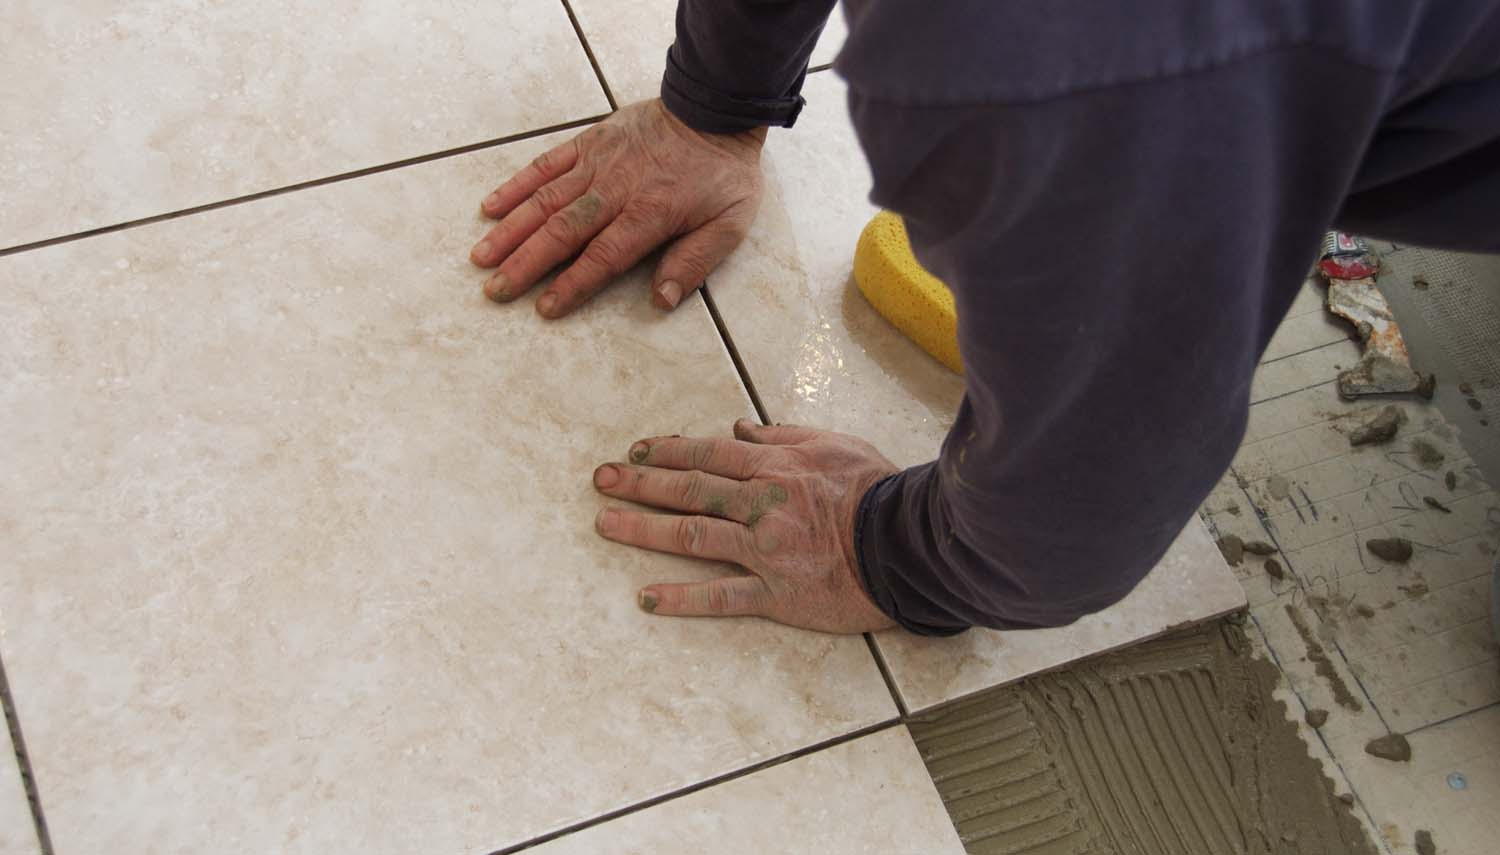 contractor with a trowel is installing floor tiles in san antonio home